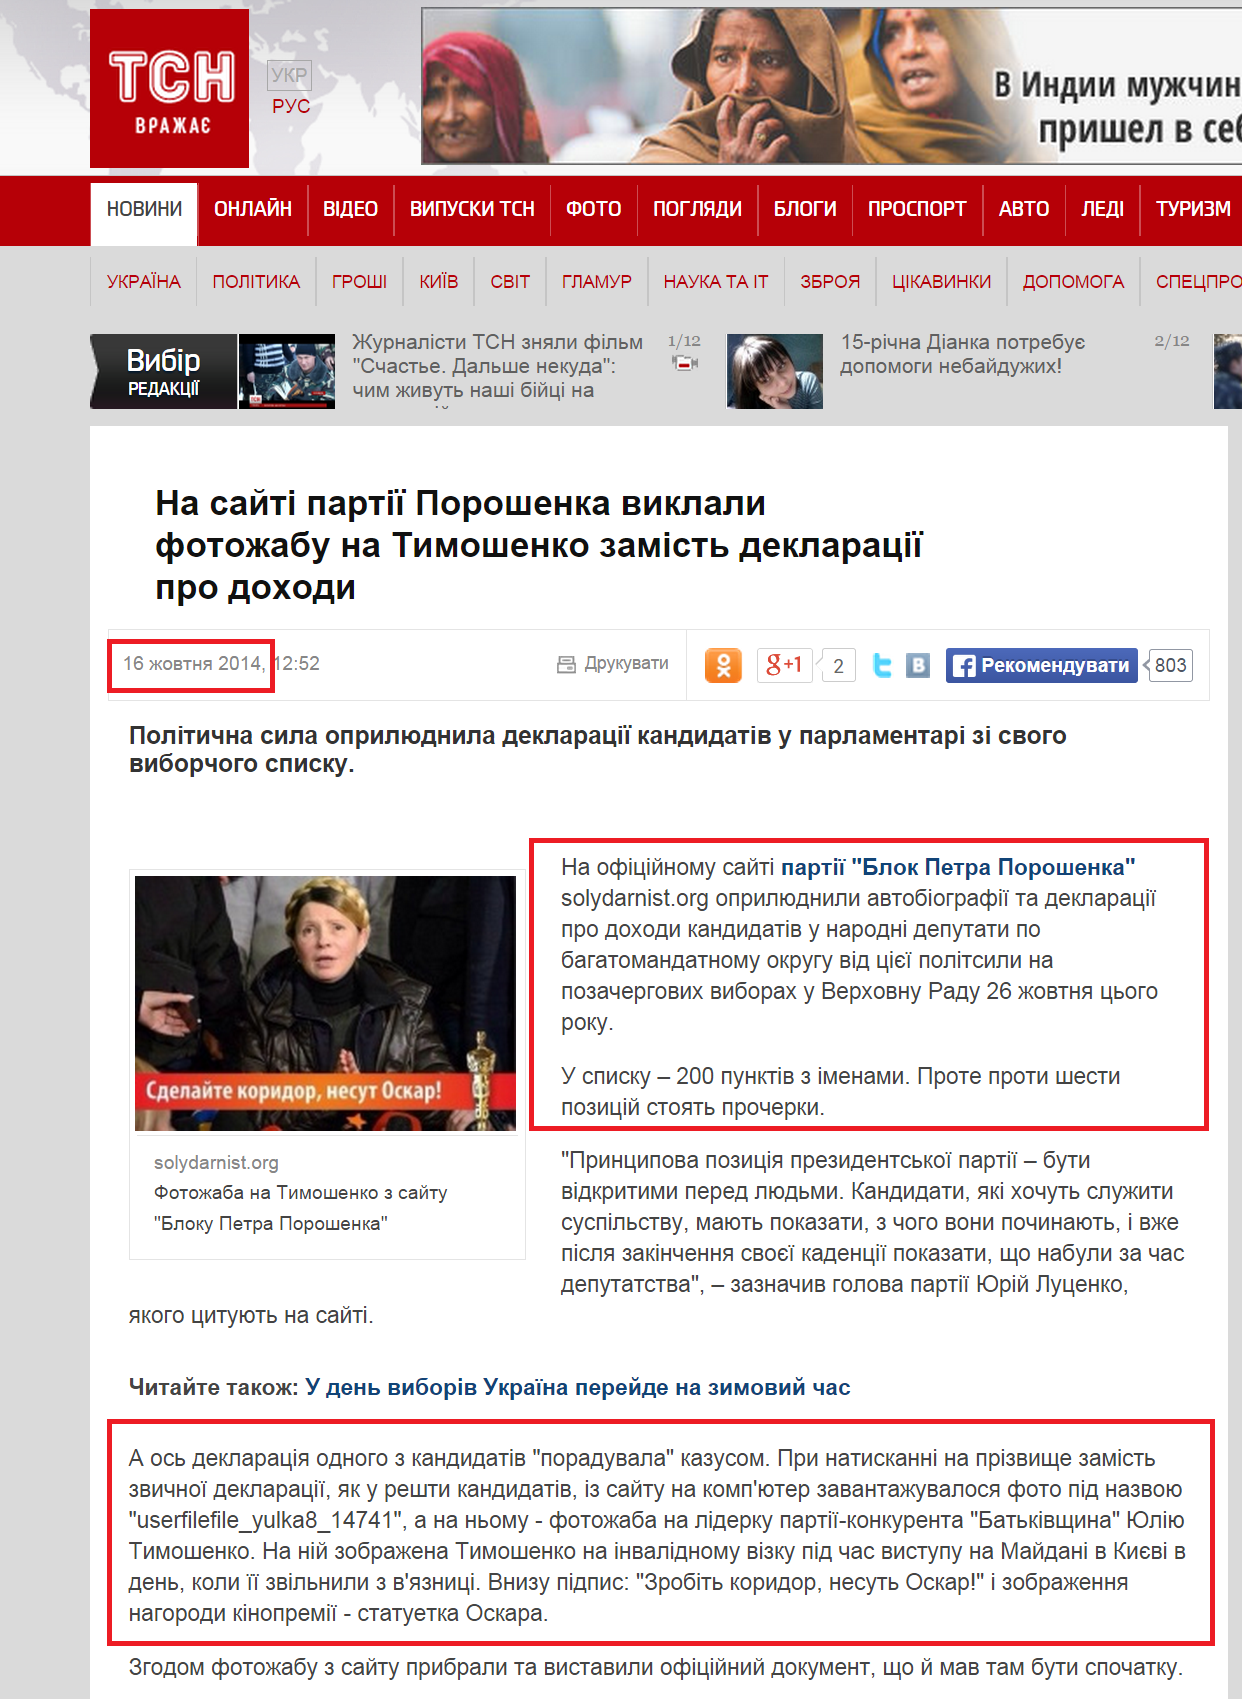 http://tsn.ua/vybory-v-rady2014/na-sayti-partiyi-poroshenka-zamist-deklaraciyi-kandidatki-v-nardepi-viklali-fotozhabu-na-timoshenko-374182.html